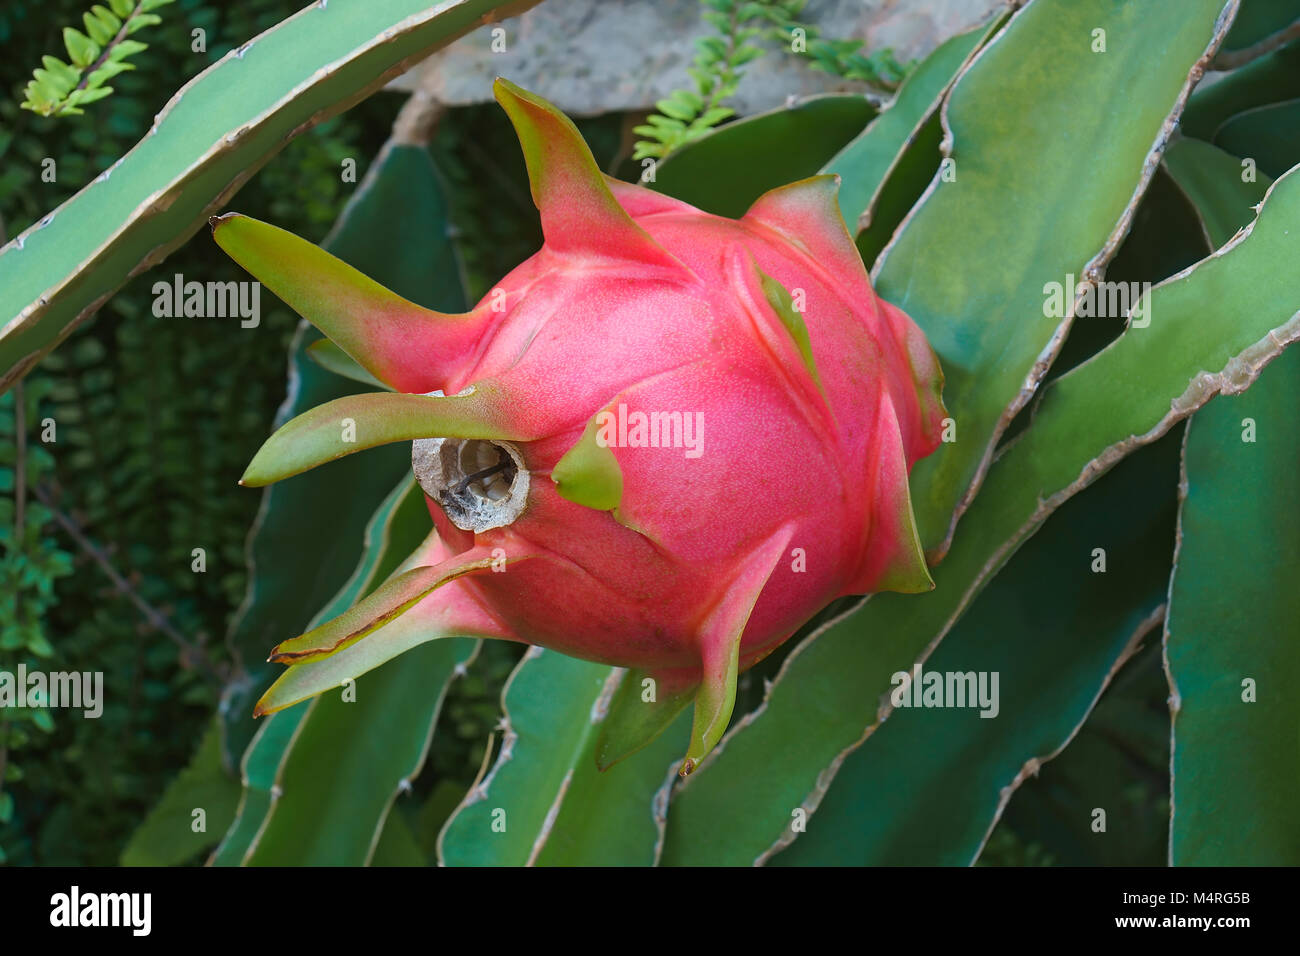 Dragon fruit. Fruit of white-fleshed pitahaya (Hylocereus undatus) Stock Photo